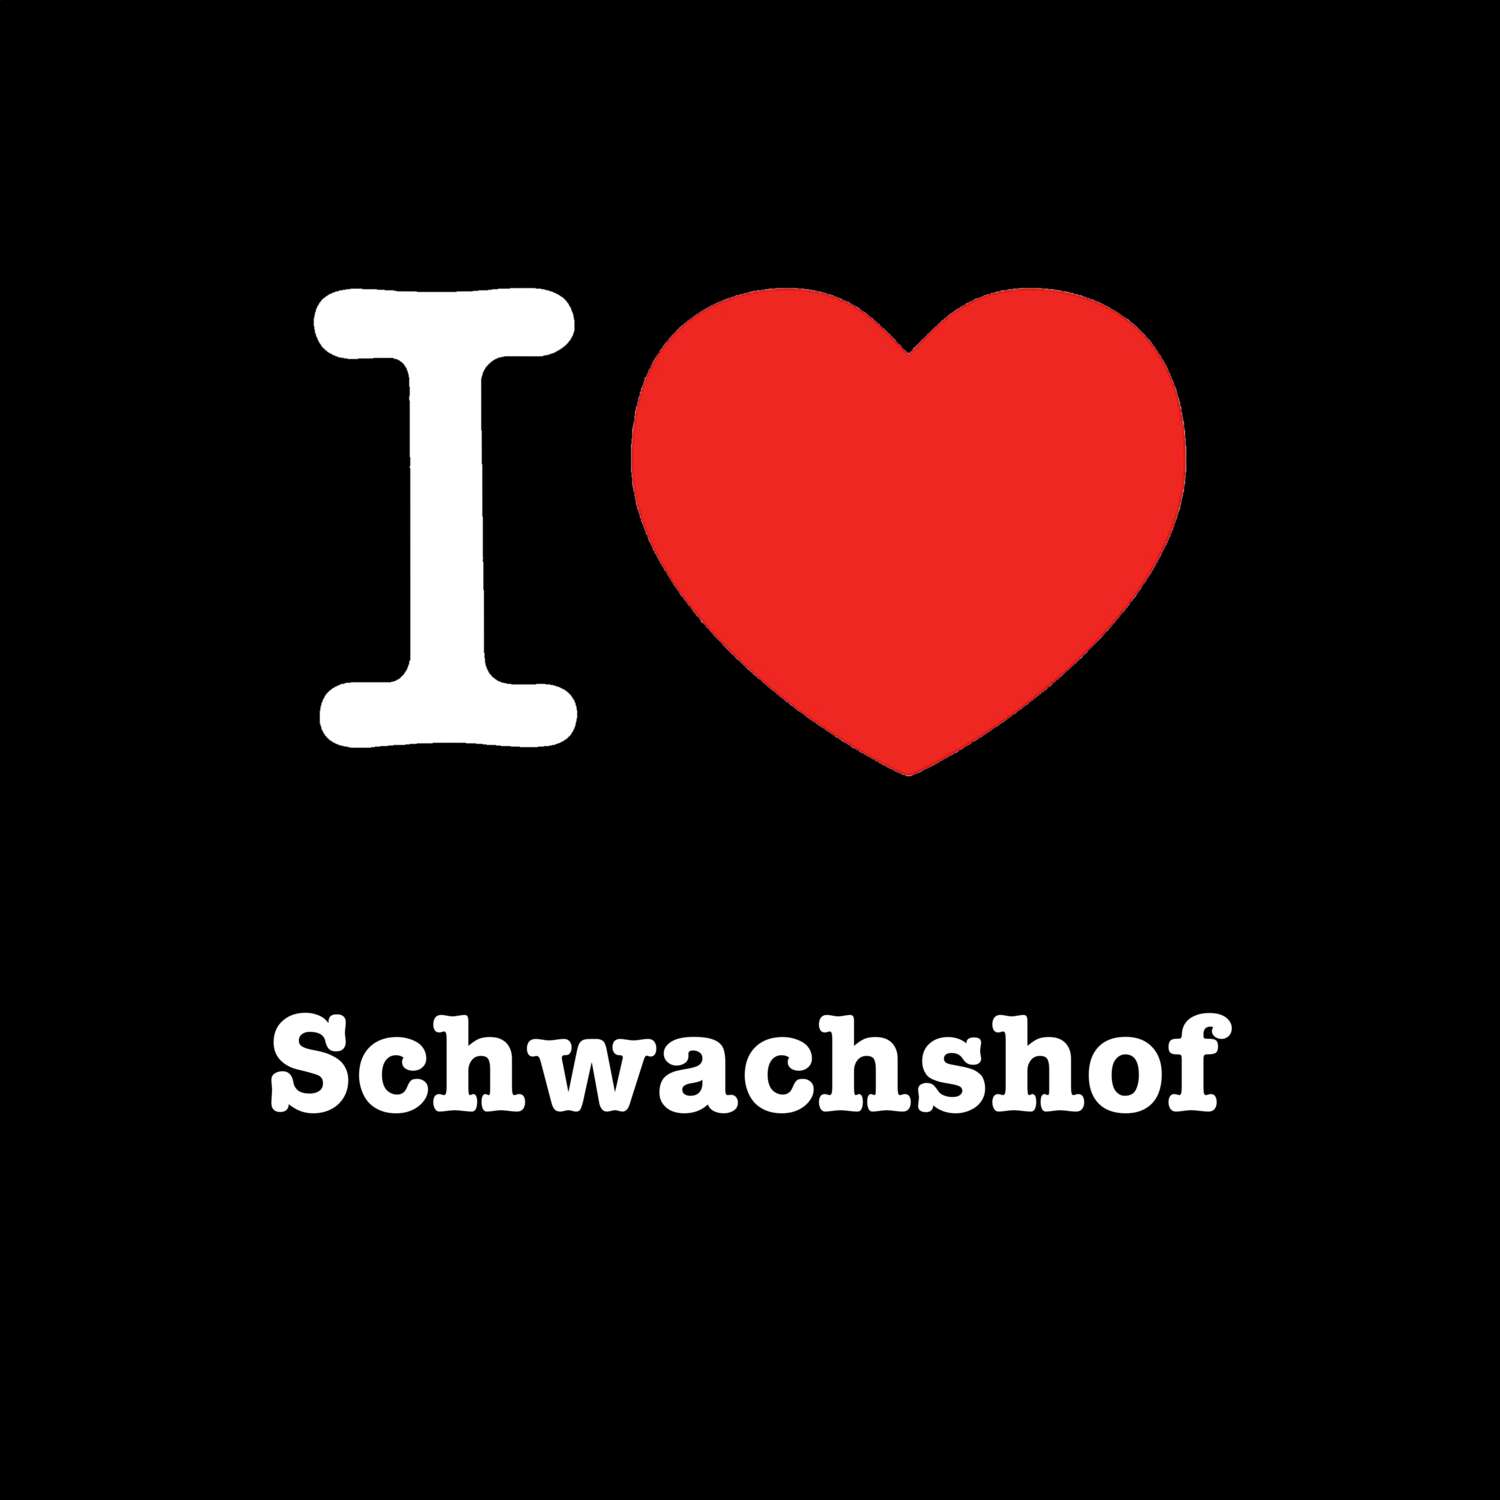 Schwachshof T-Shirt »I love«